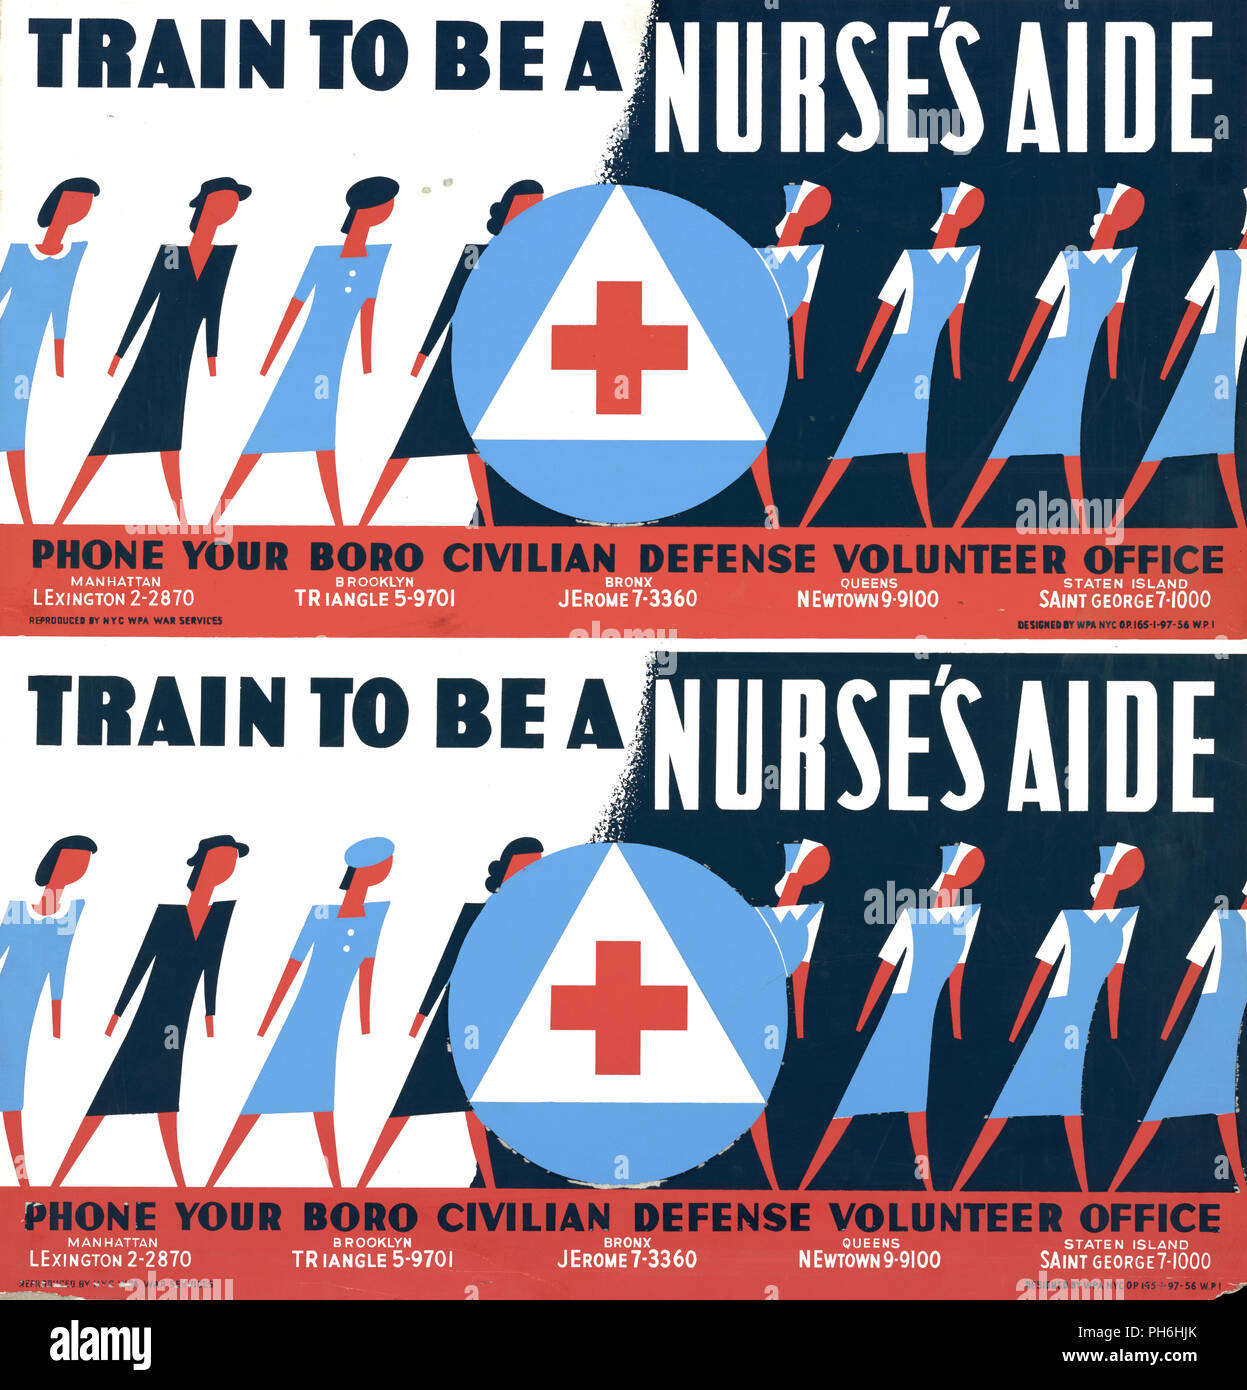 Affiche encourageant les femmes à devenir des aides-infirmières pour le Bureau des bénévoles civils de la Défense, montrant les femmes en tenue civile et l'infirmière de l'uniforme. Banque D'Images